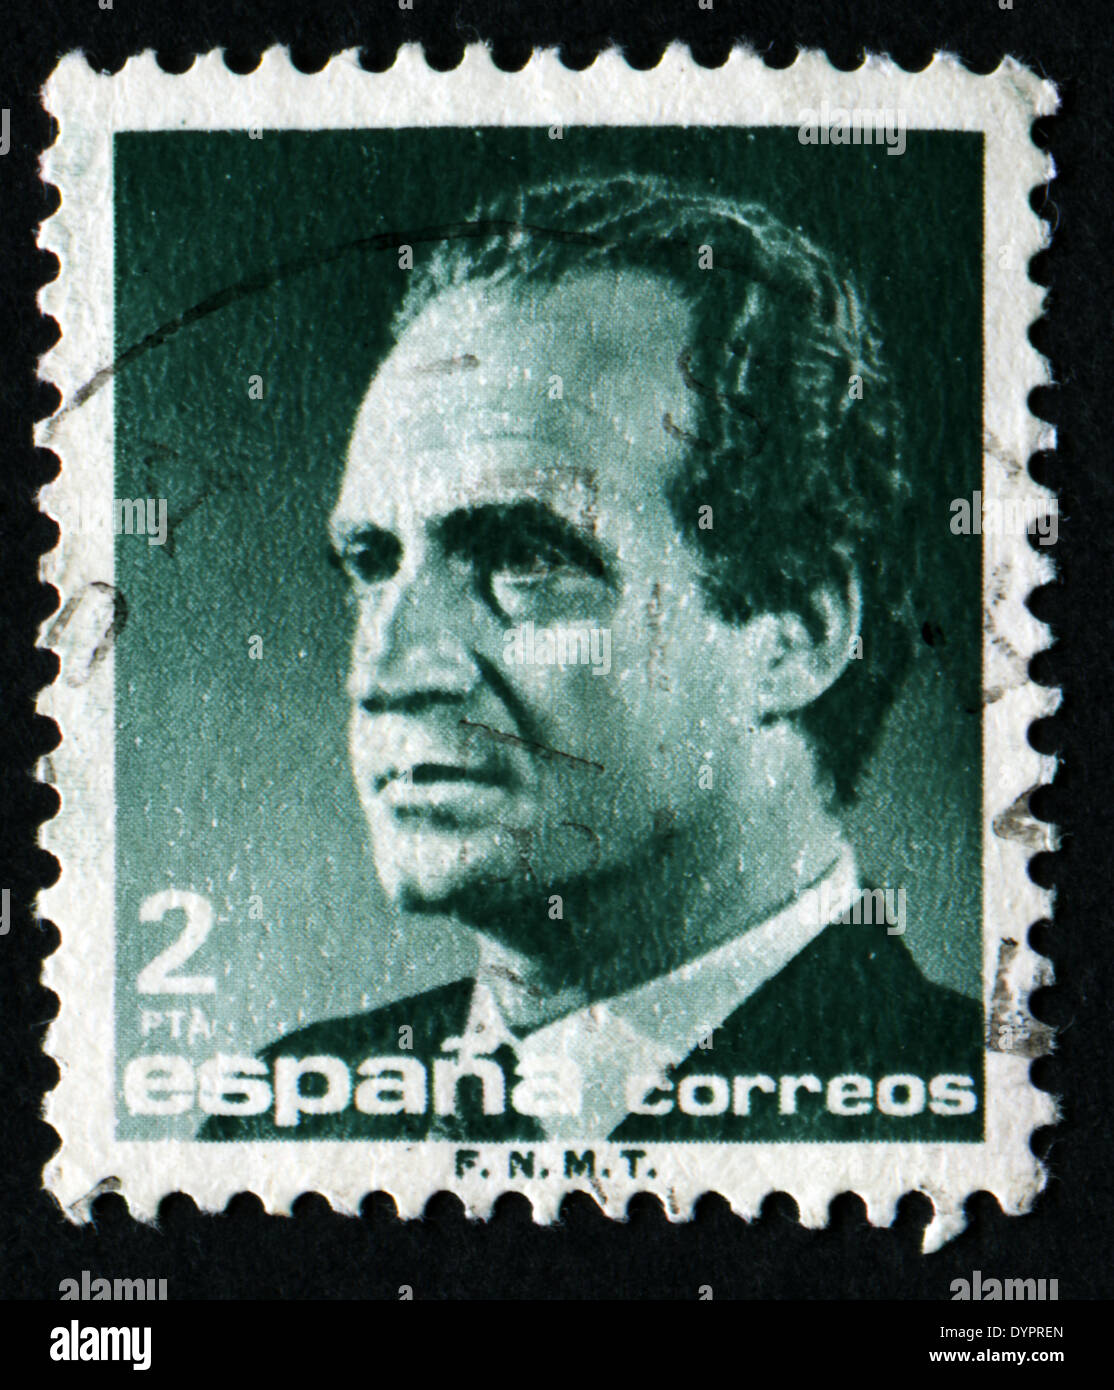 España - circa 1985: un sello impreso en España muestra un retrato del rey Juan Carlos I de España sin inscripción Foto de stock